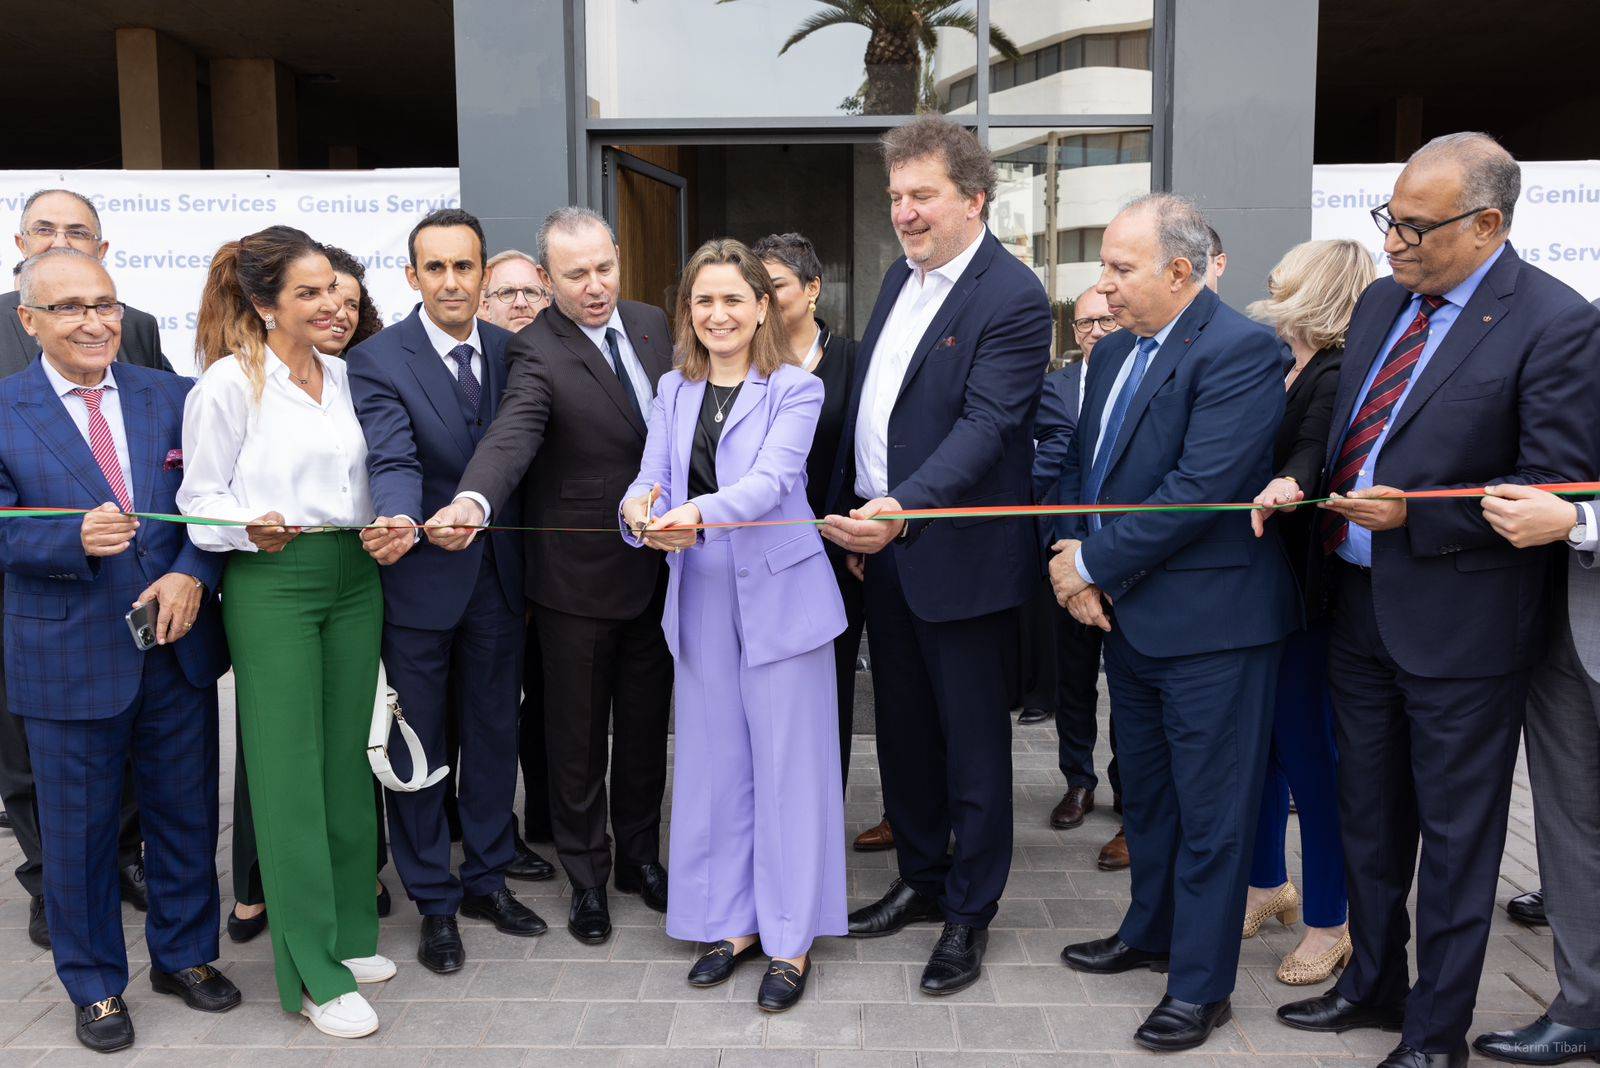 افتتاح فرع جديد لـ Sogetrel في الدار البيضاء يعد بخلق 1000 فرصة عمل